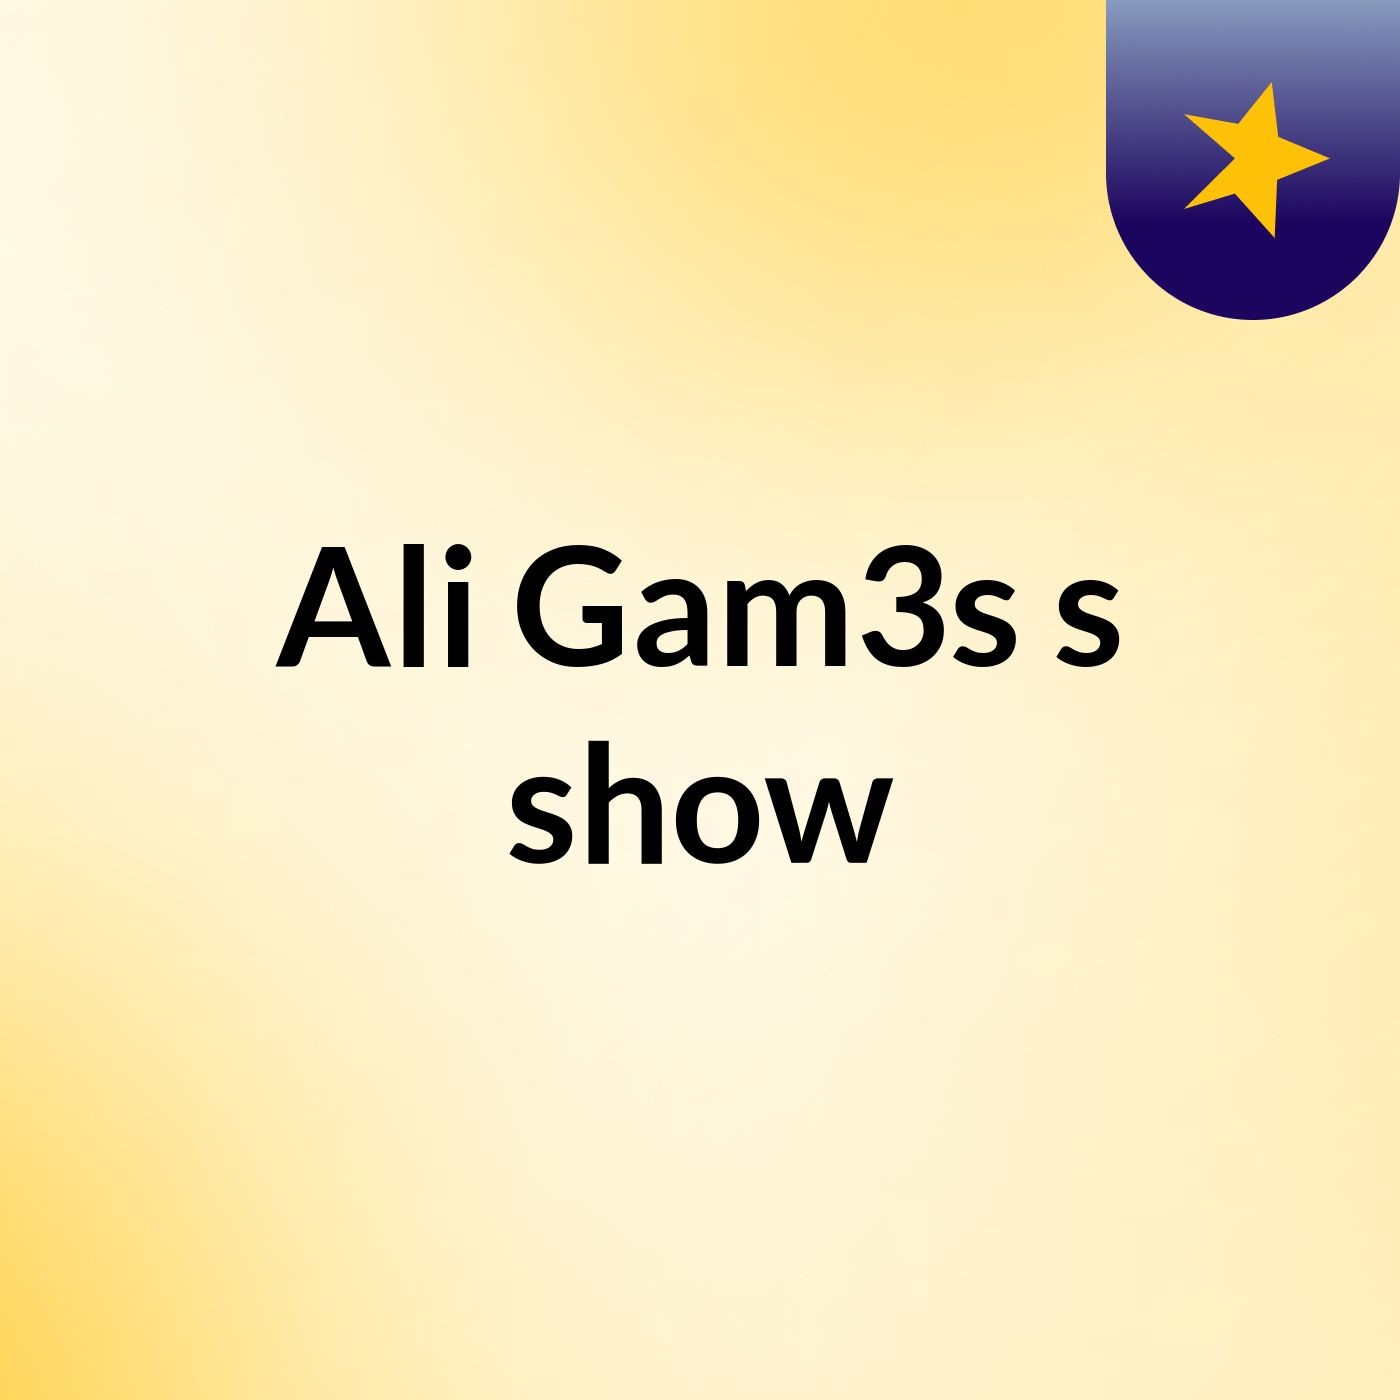 Ali Gam3s's show